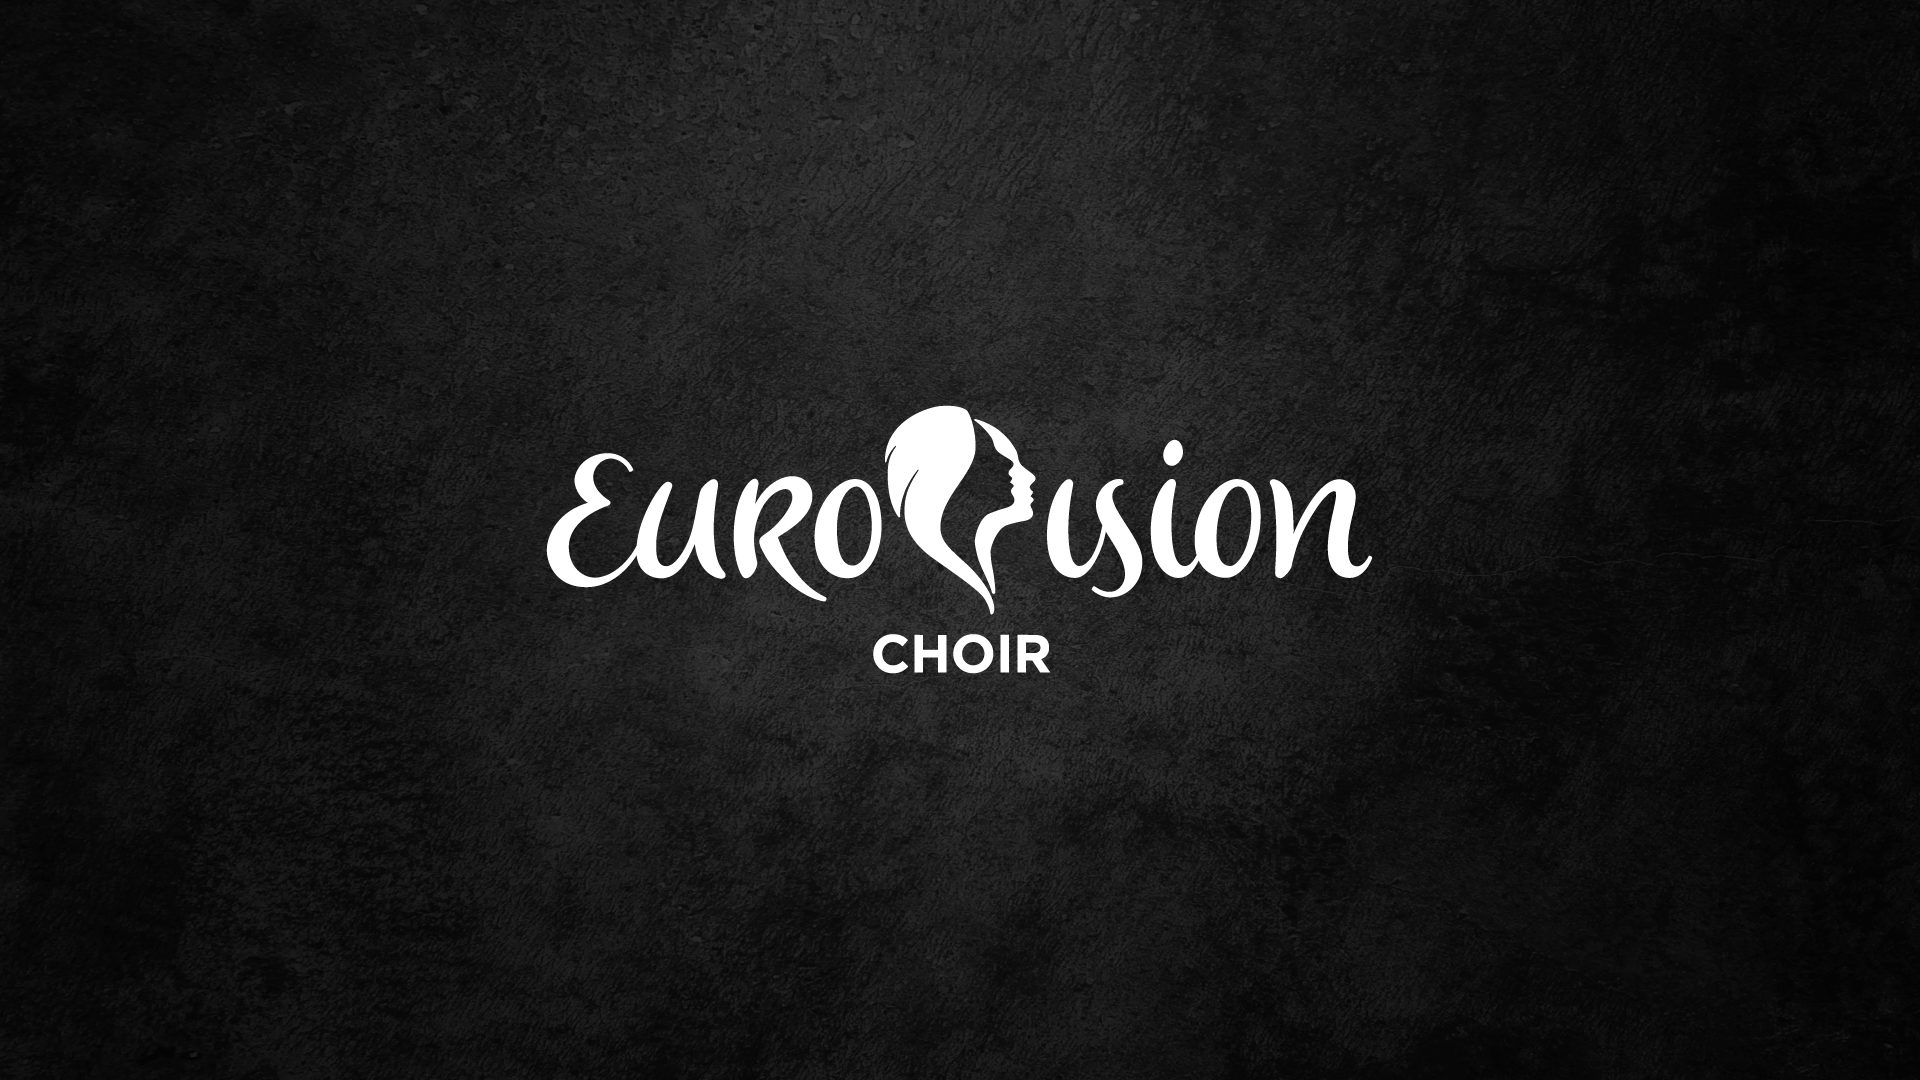 La UER planea una nueva edición del Eurovision Choir en 2023